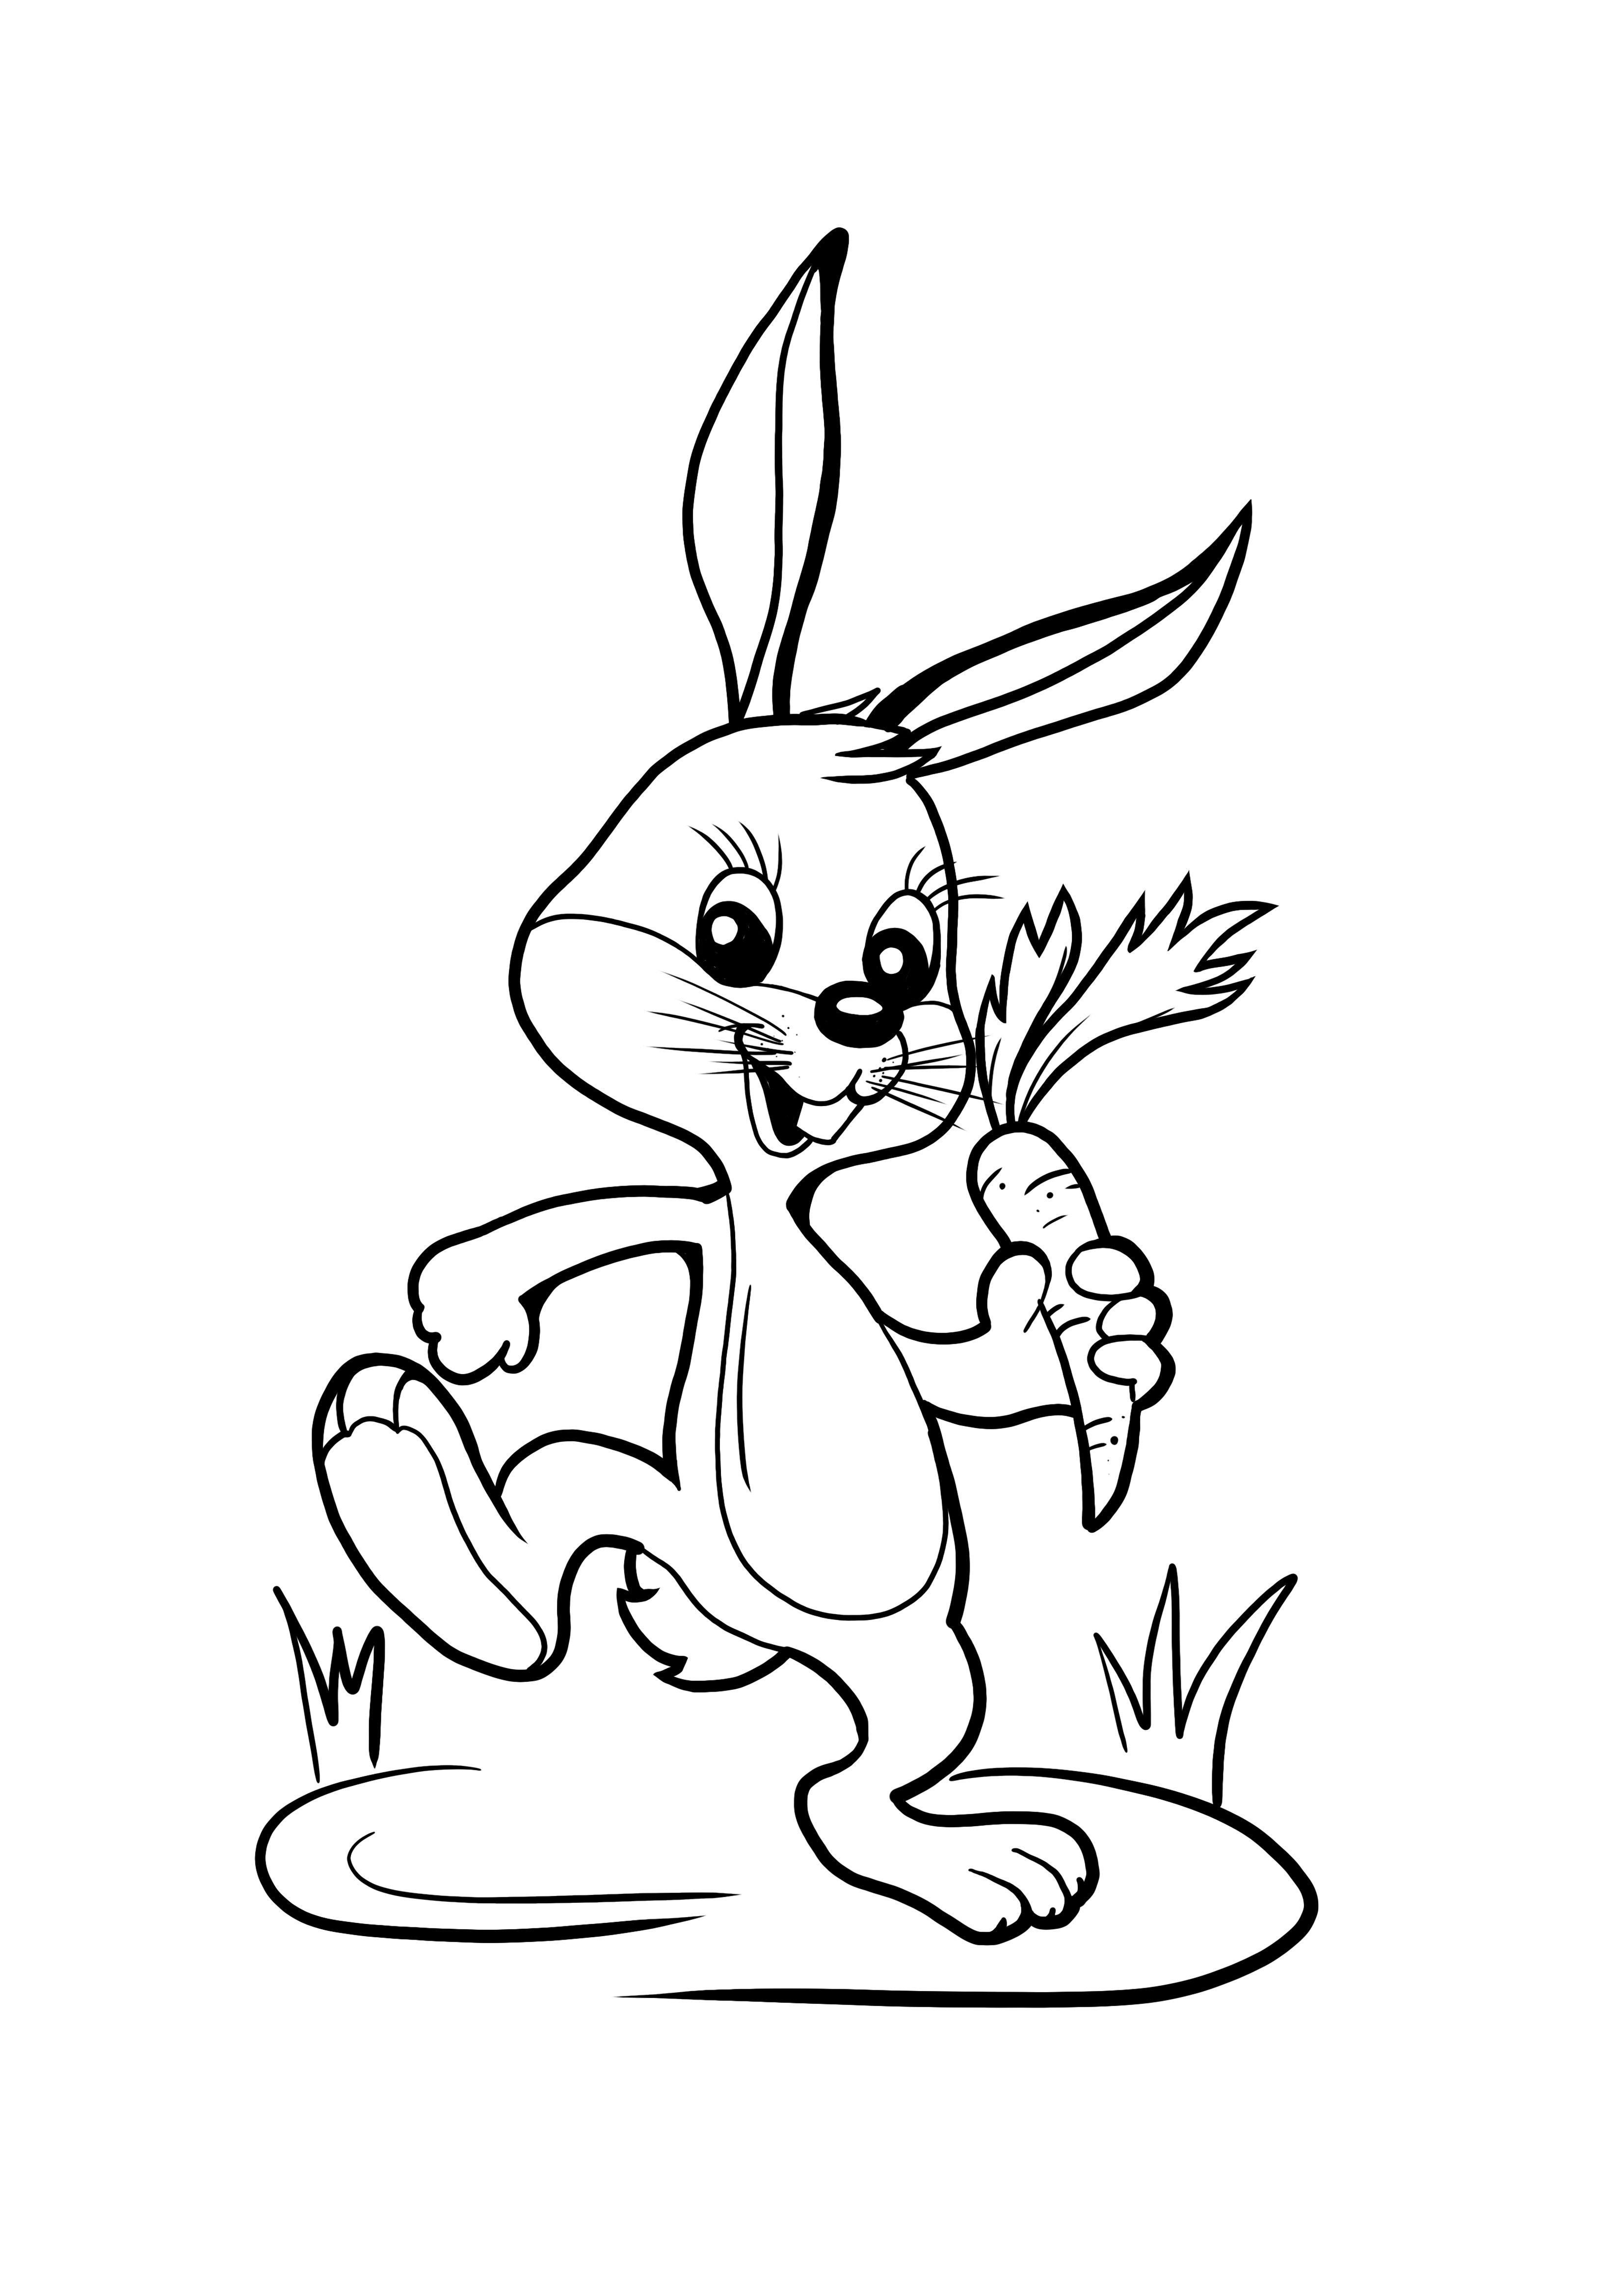 Conejo sosteniendo una página de color e impresión de zanahoria